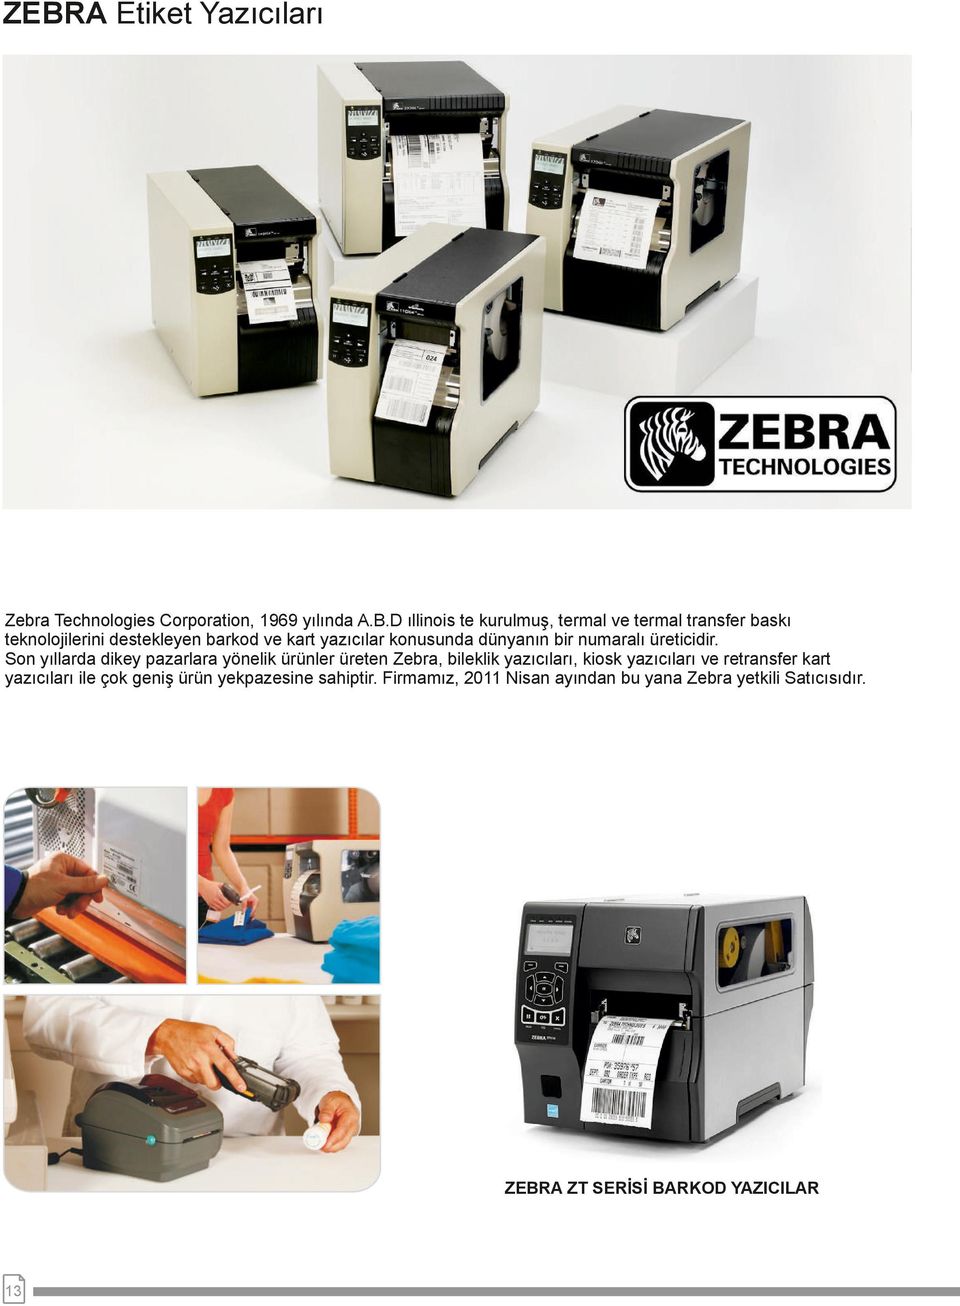 Son yıllarda dikey pazarlara yönelik ürünler üreten Zebra, bileklik yazıcıları, kiosk yazıcıları ve retransfer kart